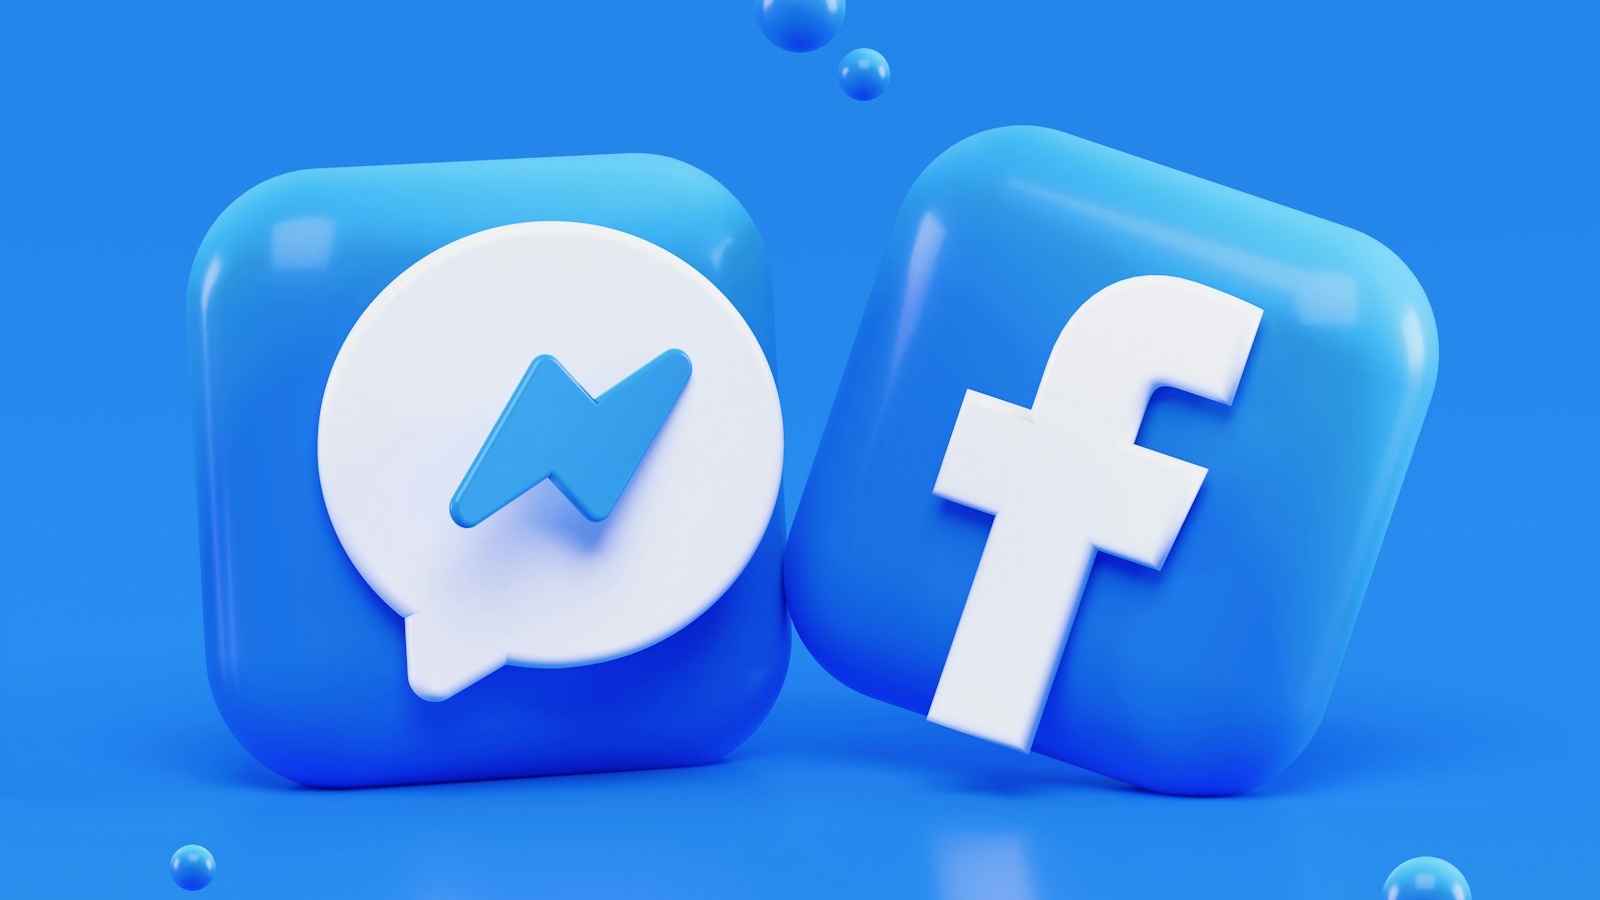 Facebook: 20 jaar van connectie, innovatie en impact